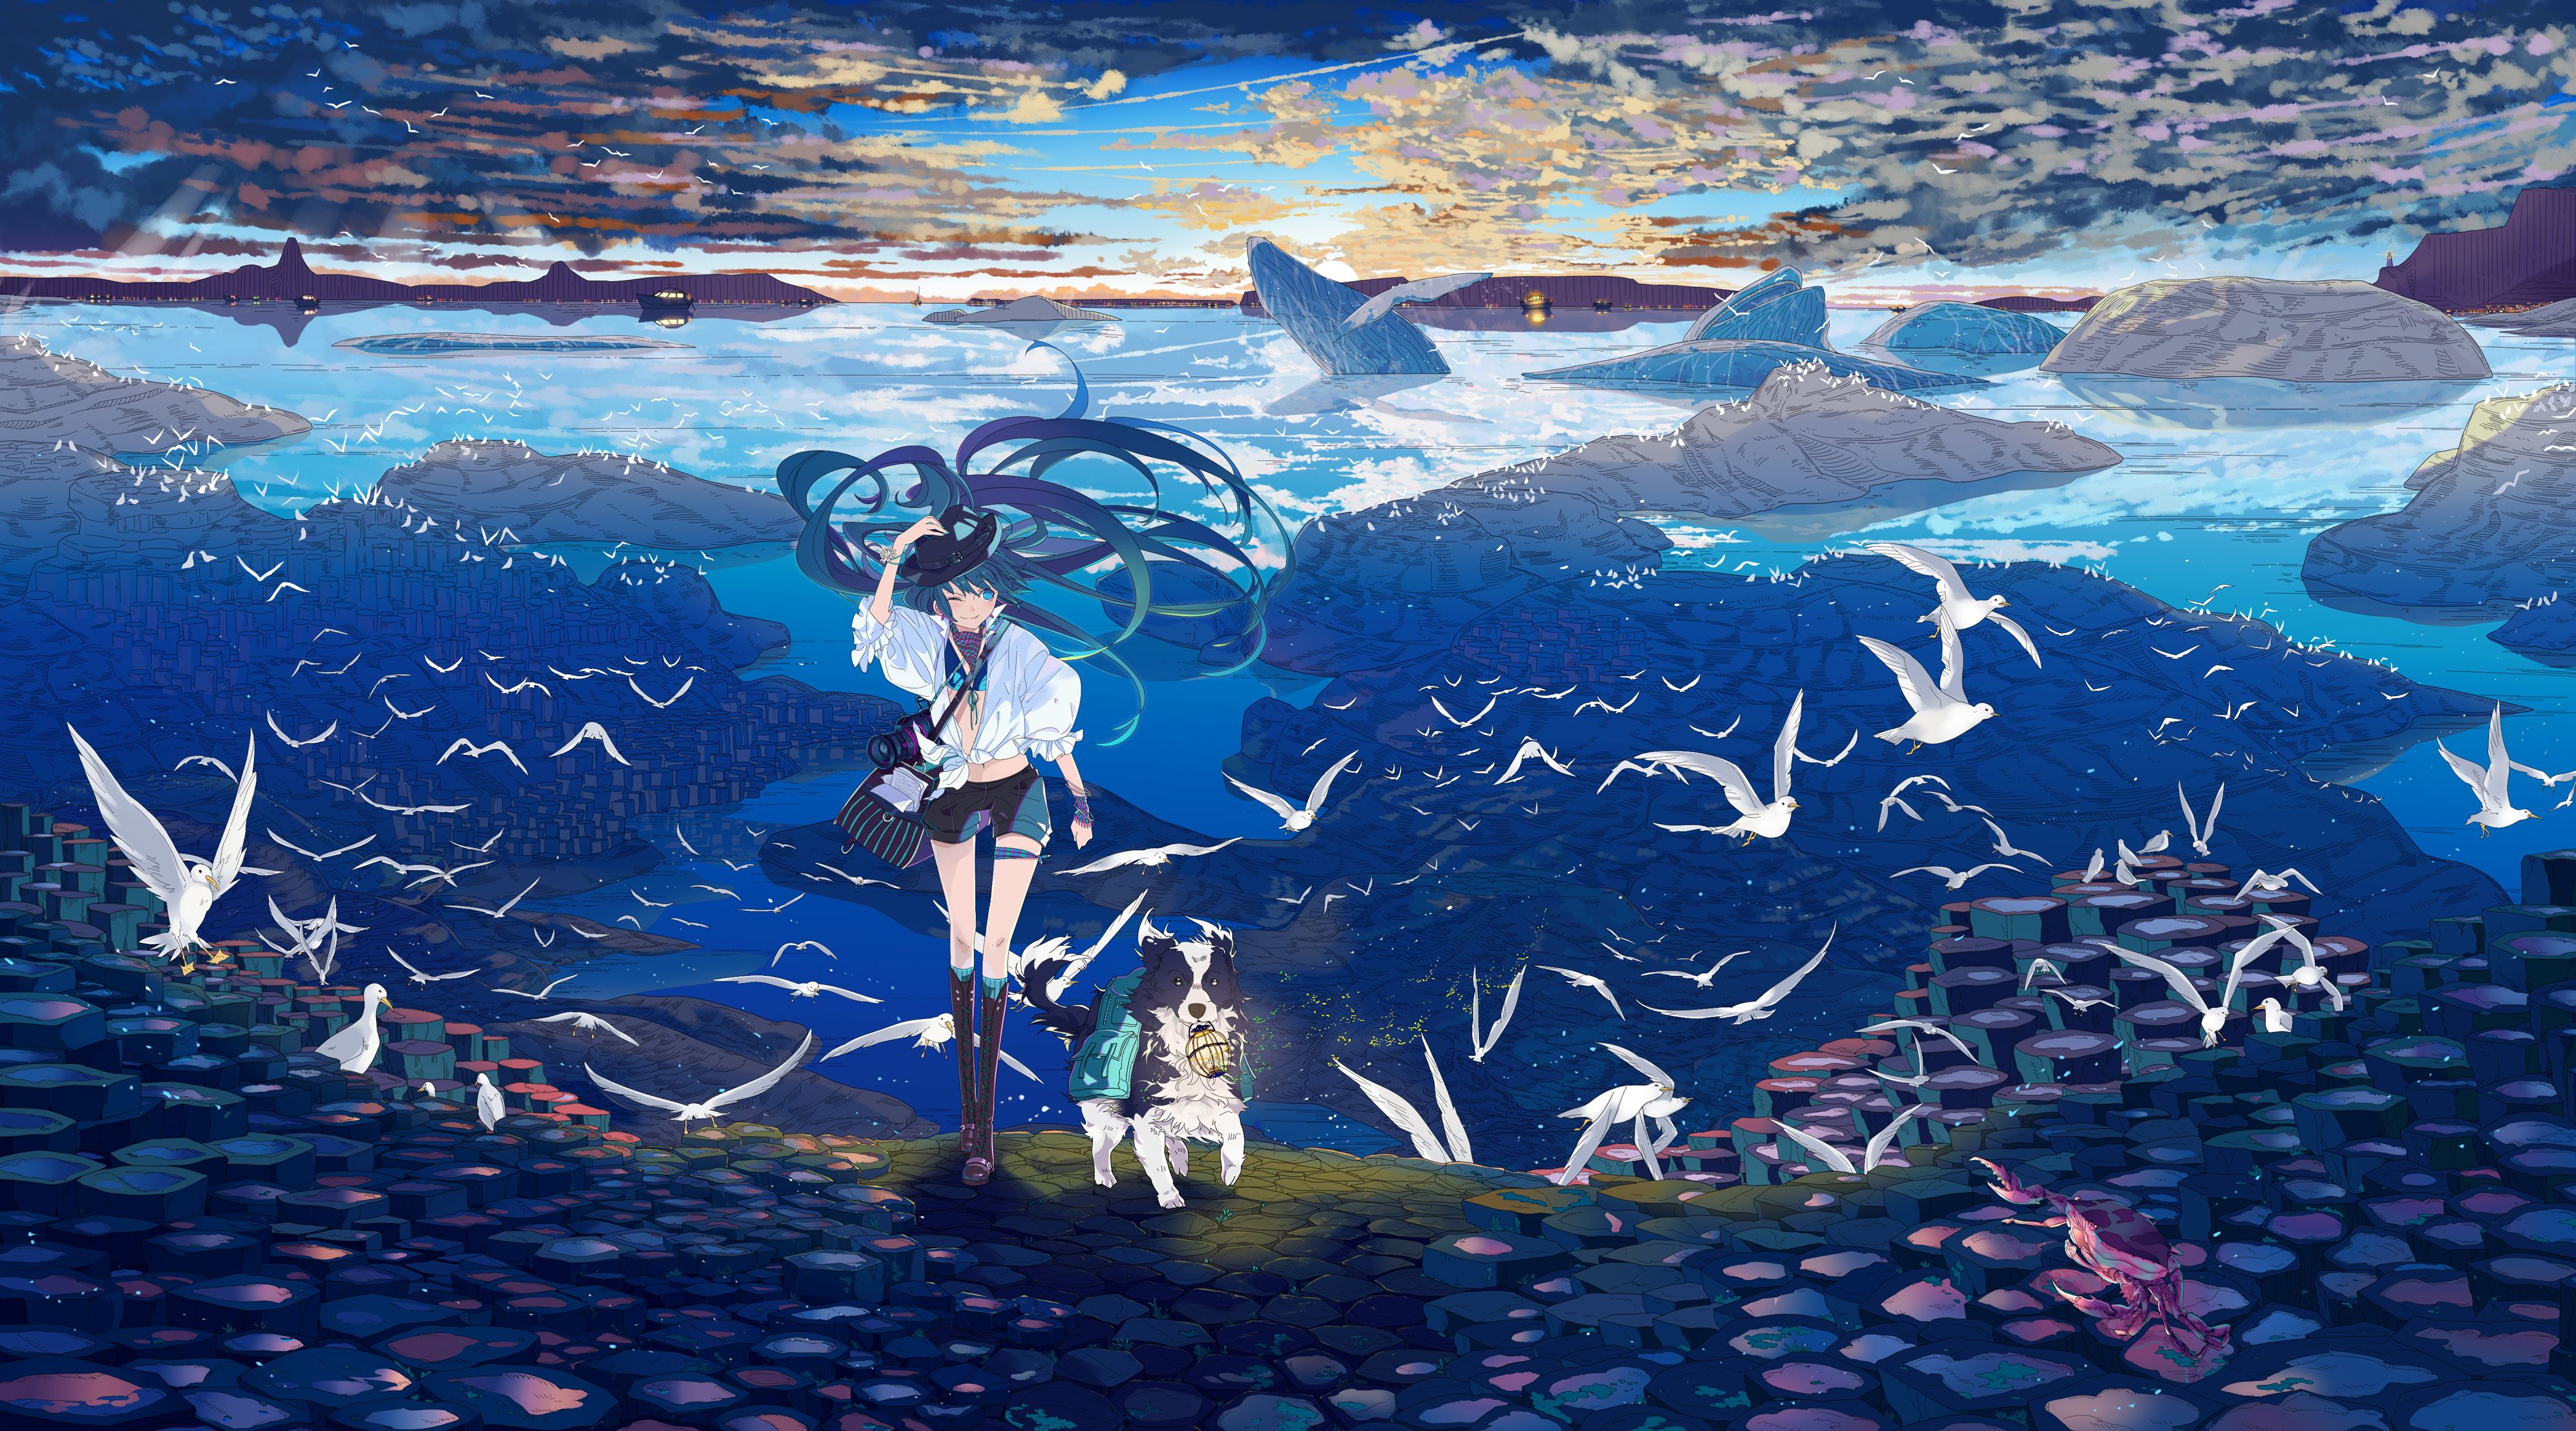 Fanart, Hatsune Miku, Vocaloid, Wallpaper, Pixiv, Fanart - Hatsune Miku Sea , HD Wallpaper & Backgrounds